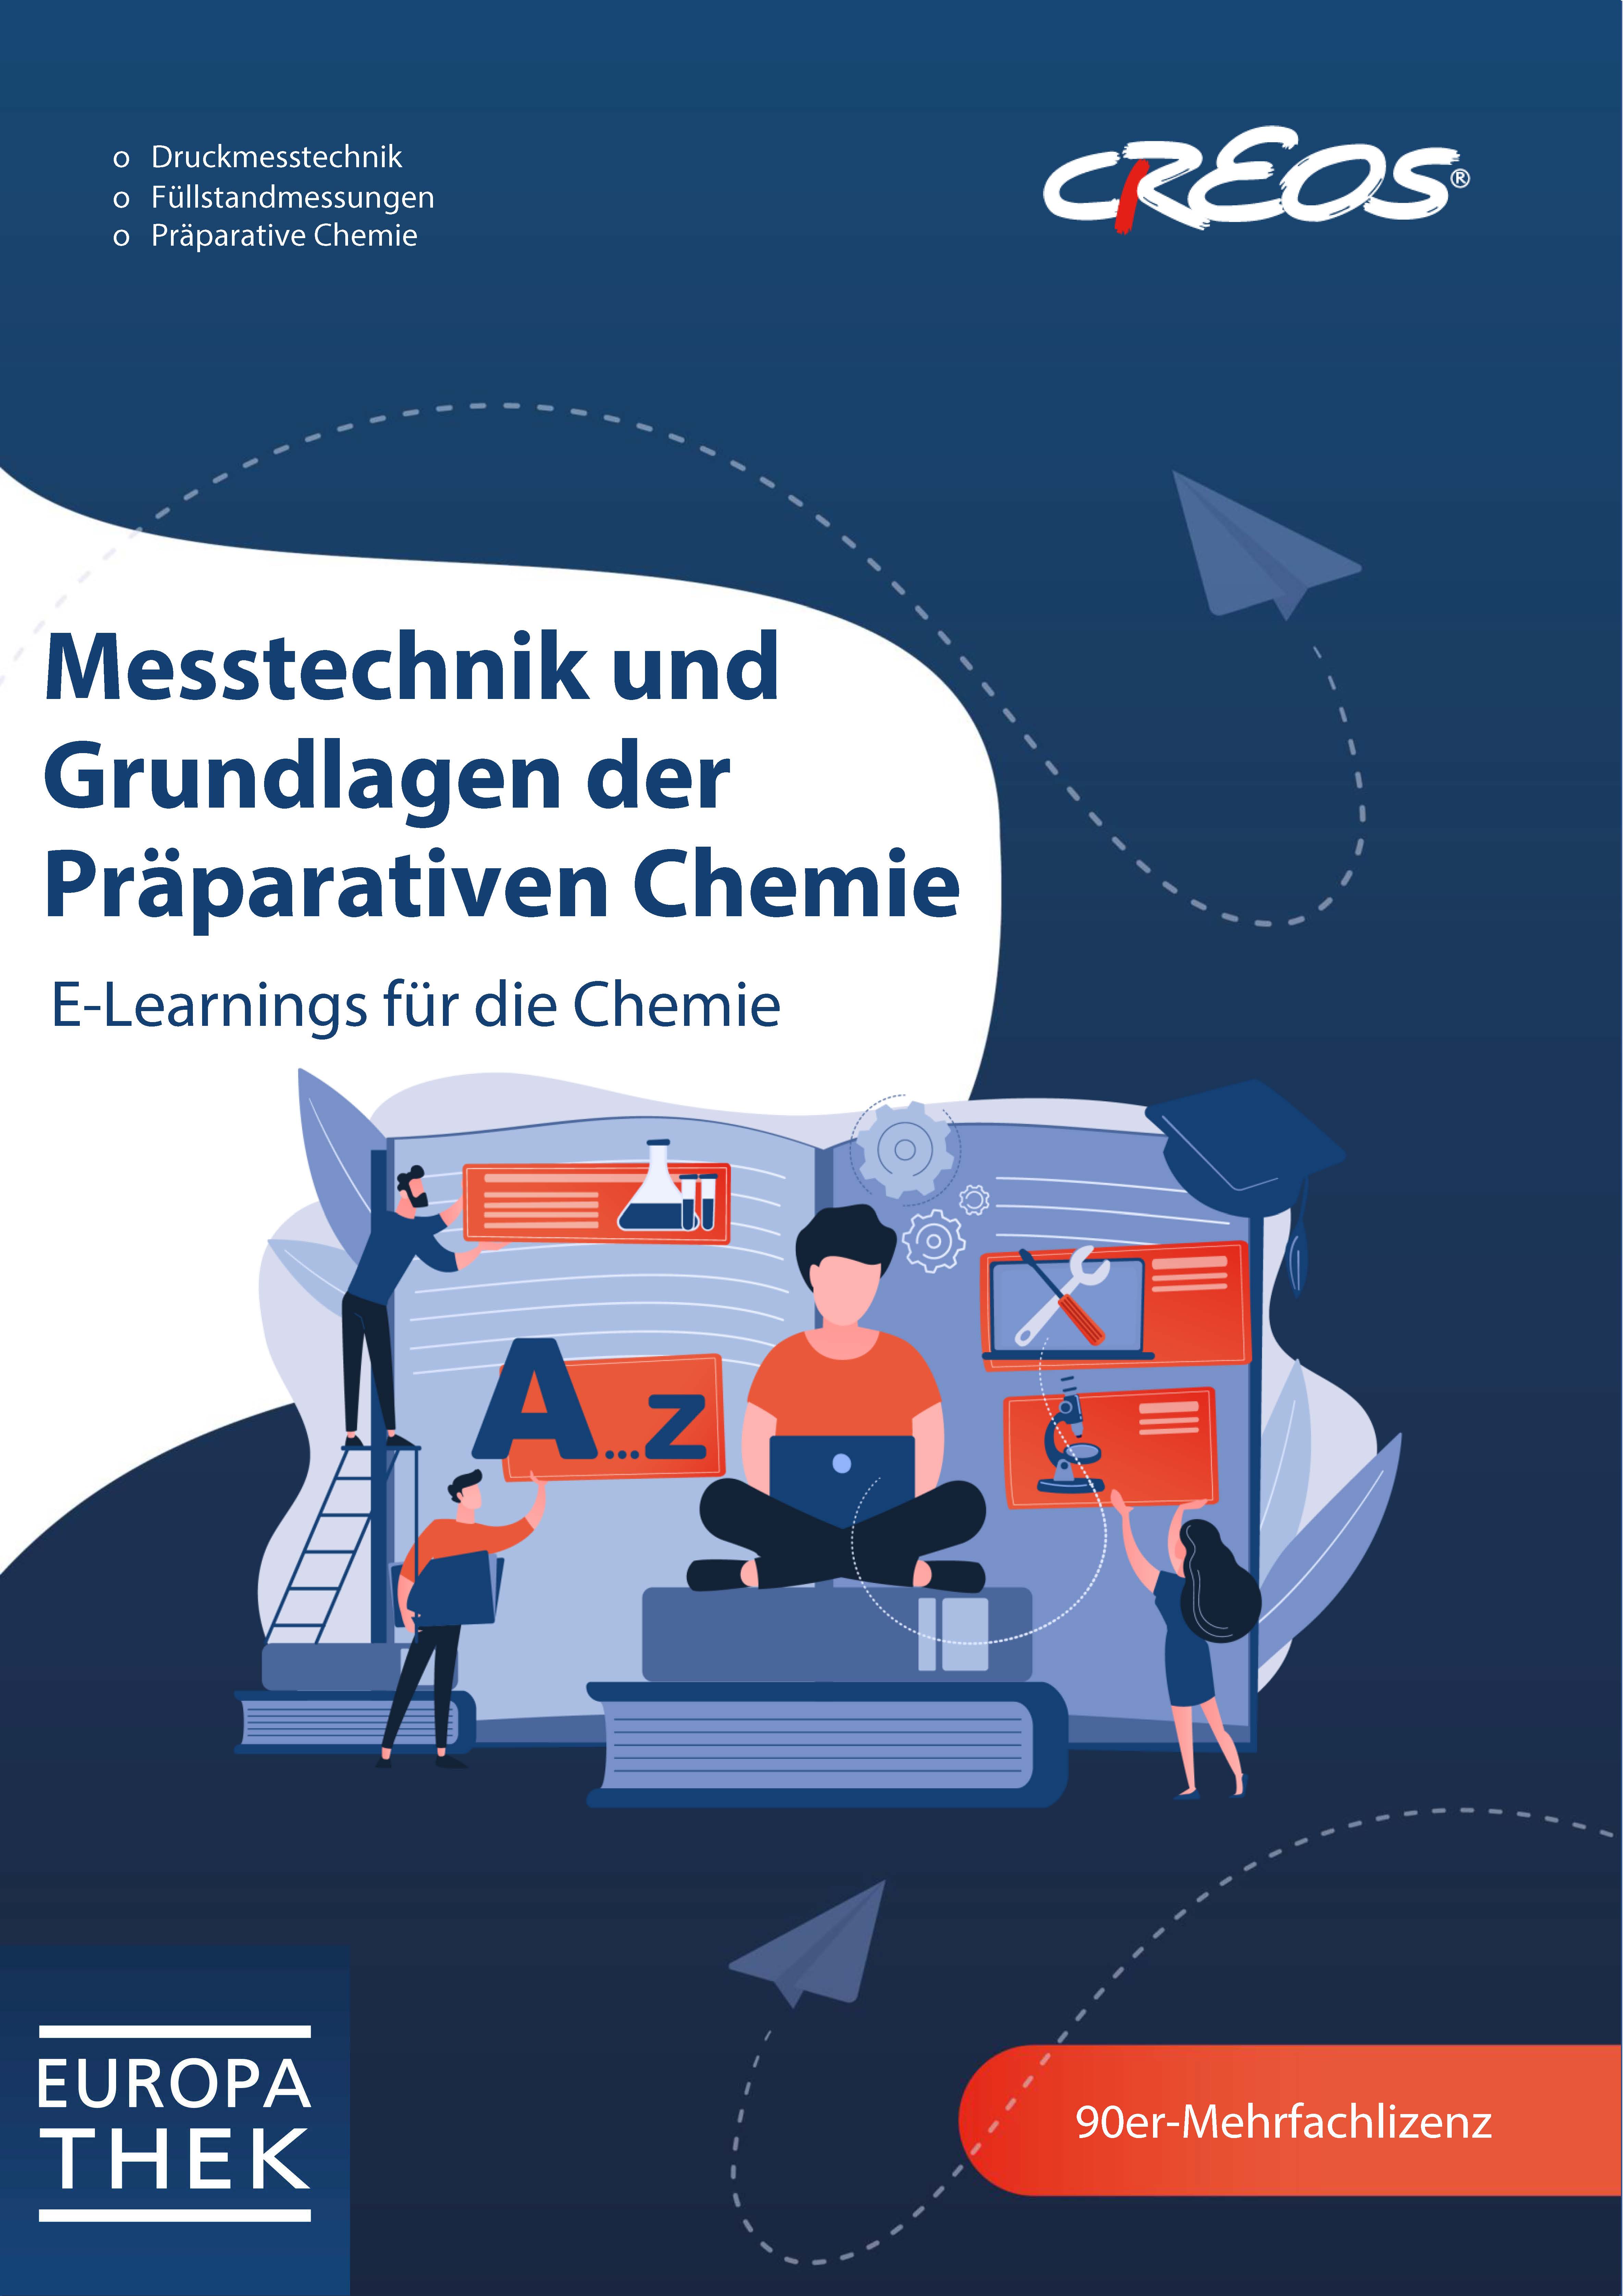 Messtechnik und Grundlagen der Präparativen Chemie - E-Learnings für die Chemie